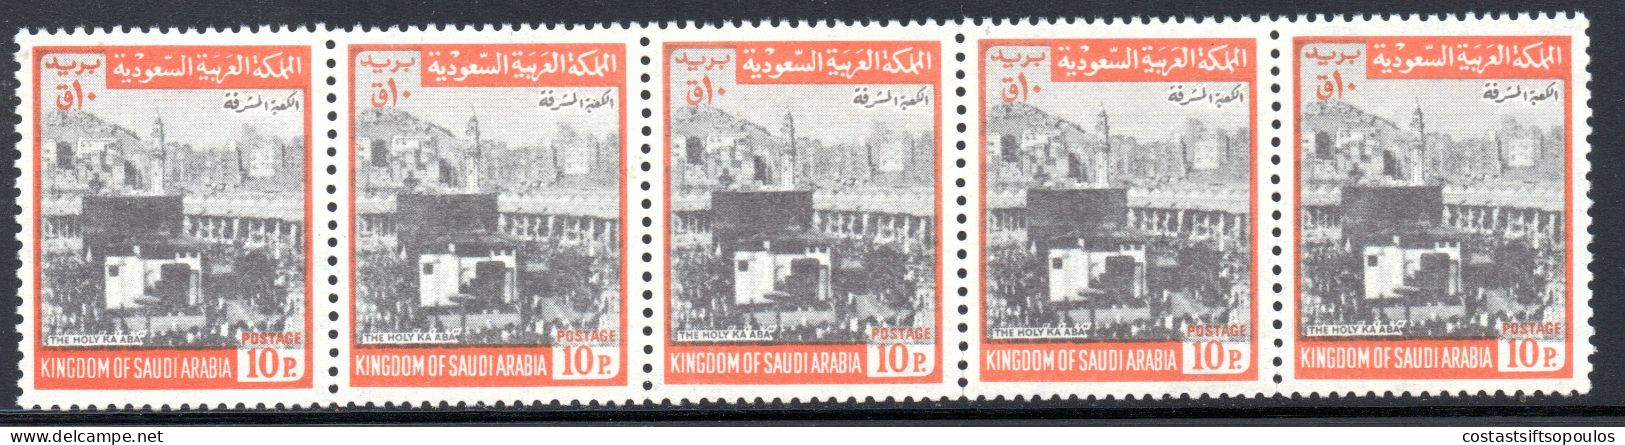 2941. SAUDI ARABIA 1969 10 P. KAABA MICH. 487 II MNH STRIP OF 5 - Saoedi-Arabië